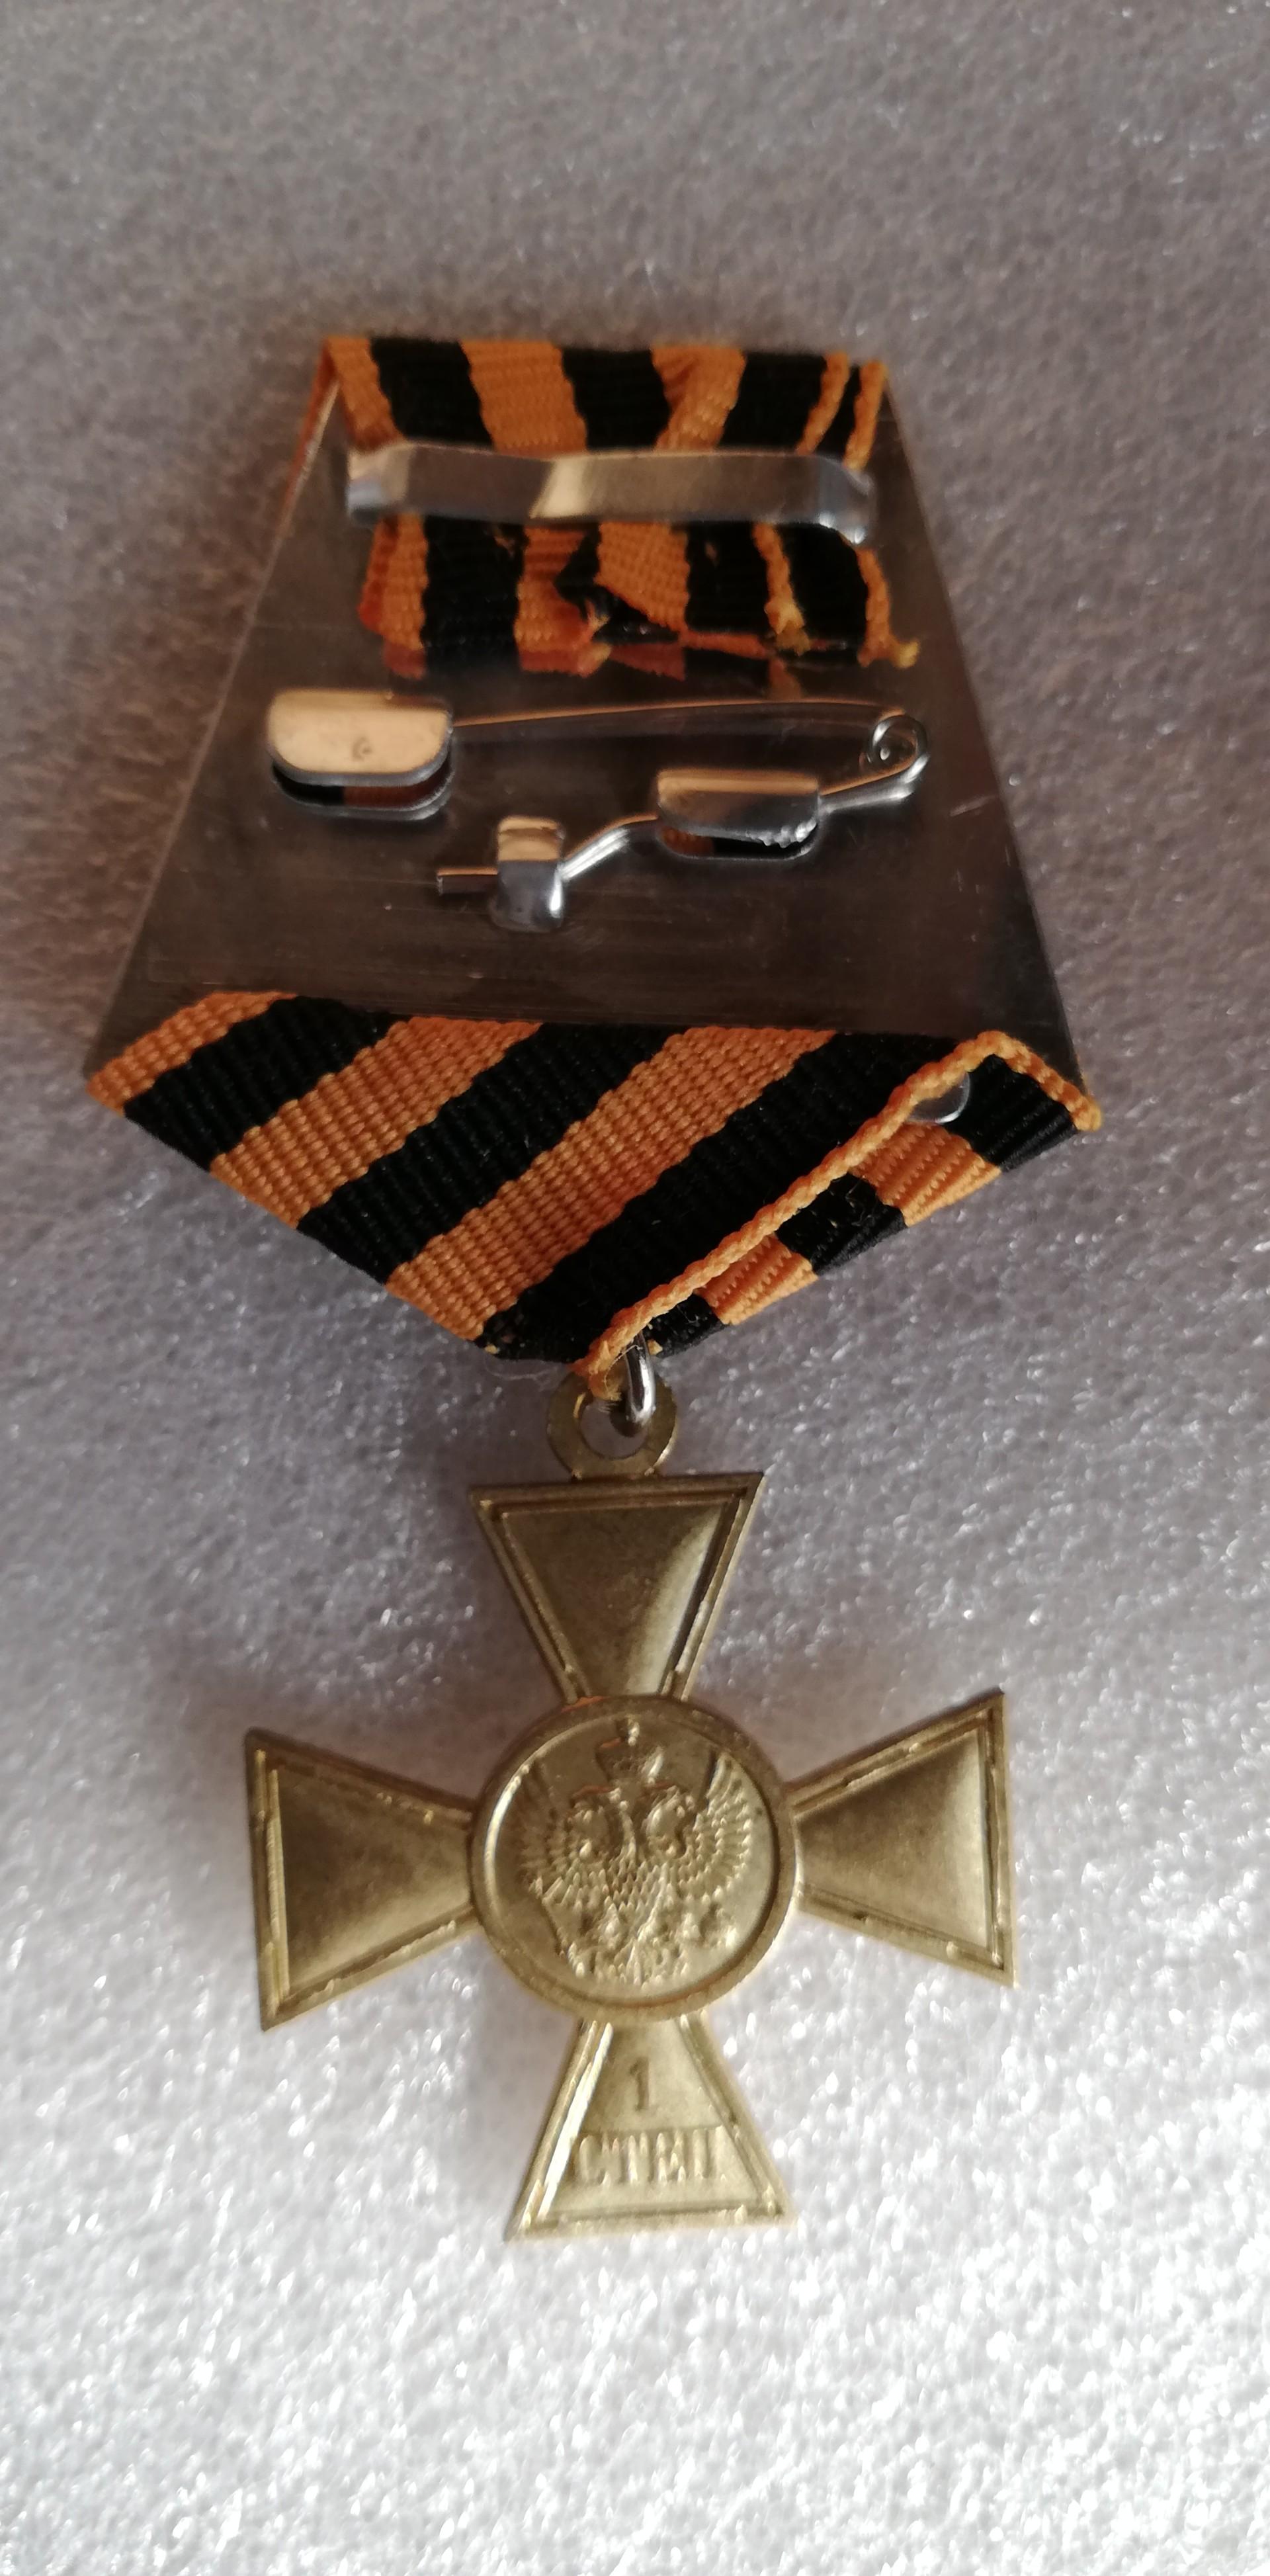 Carinių medalių kopijos